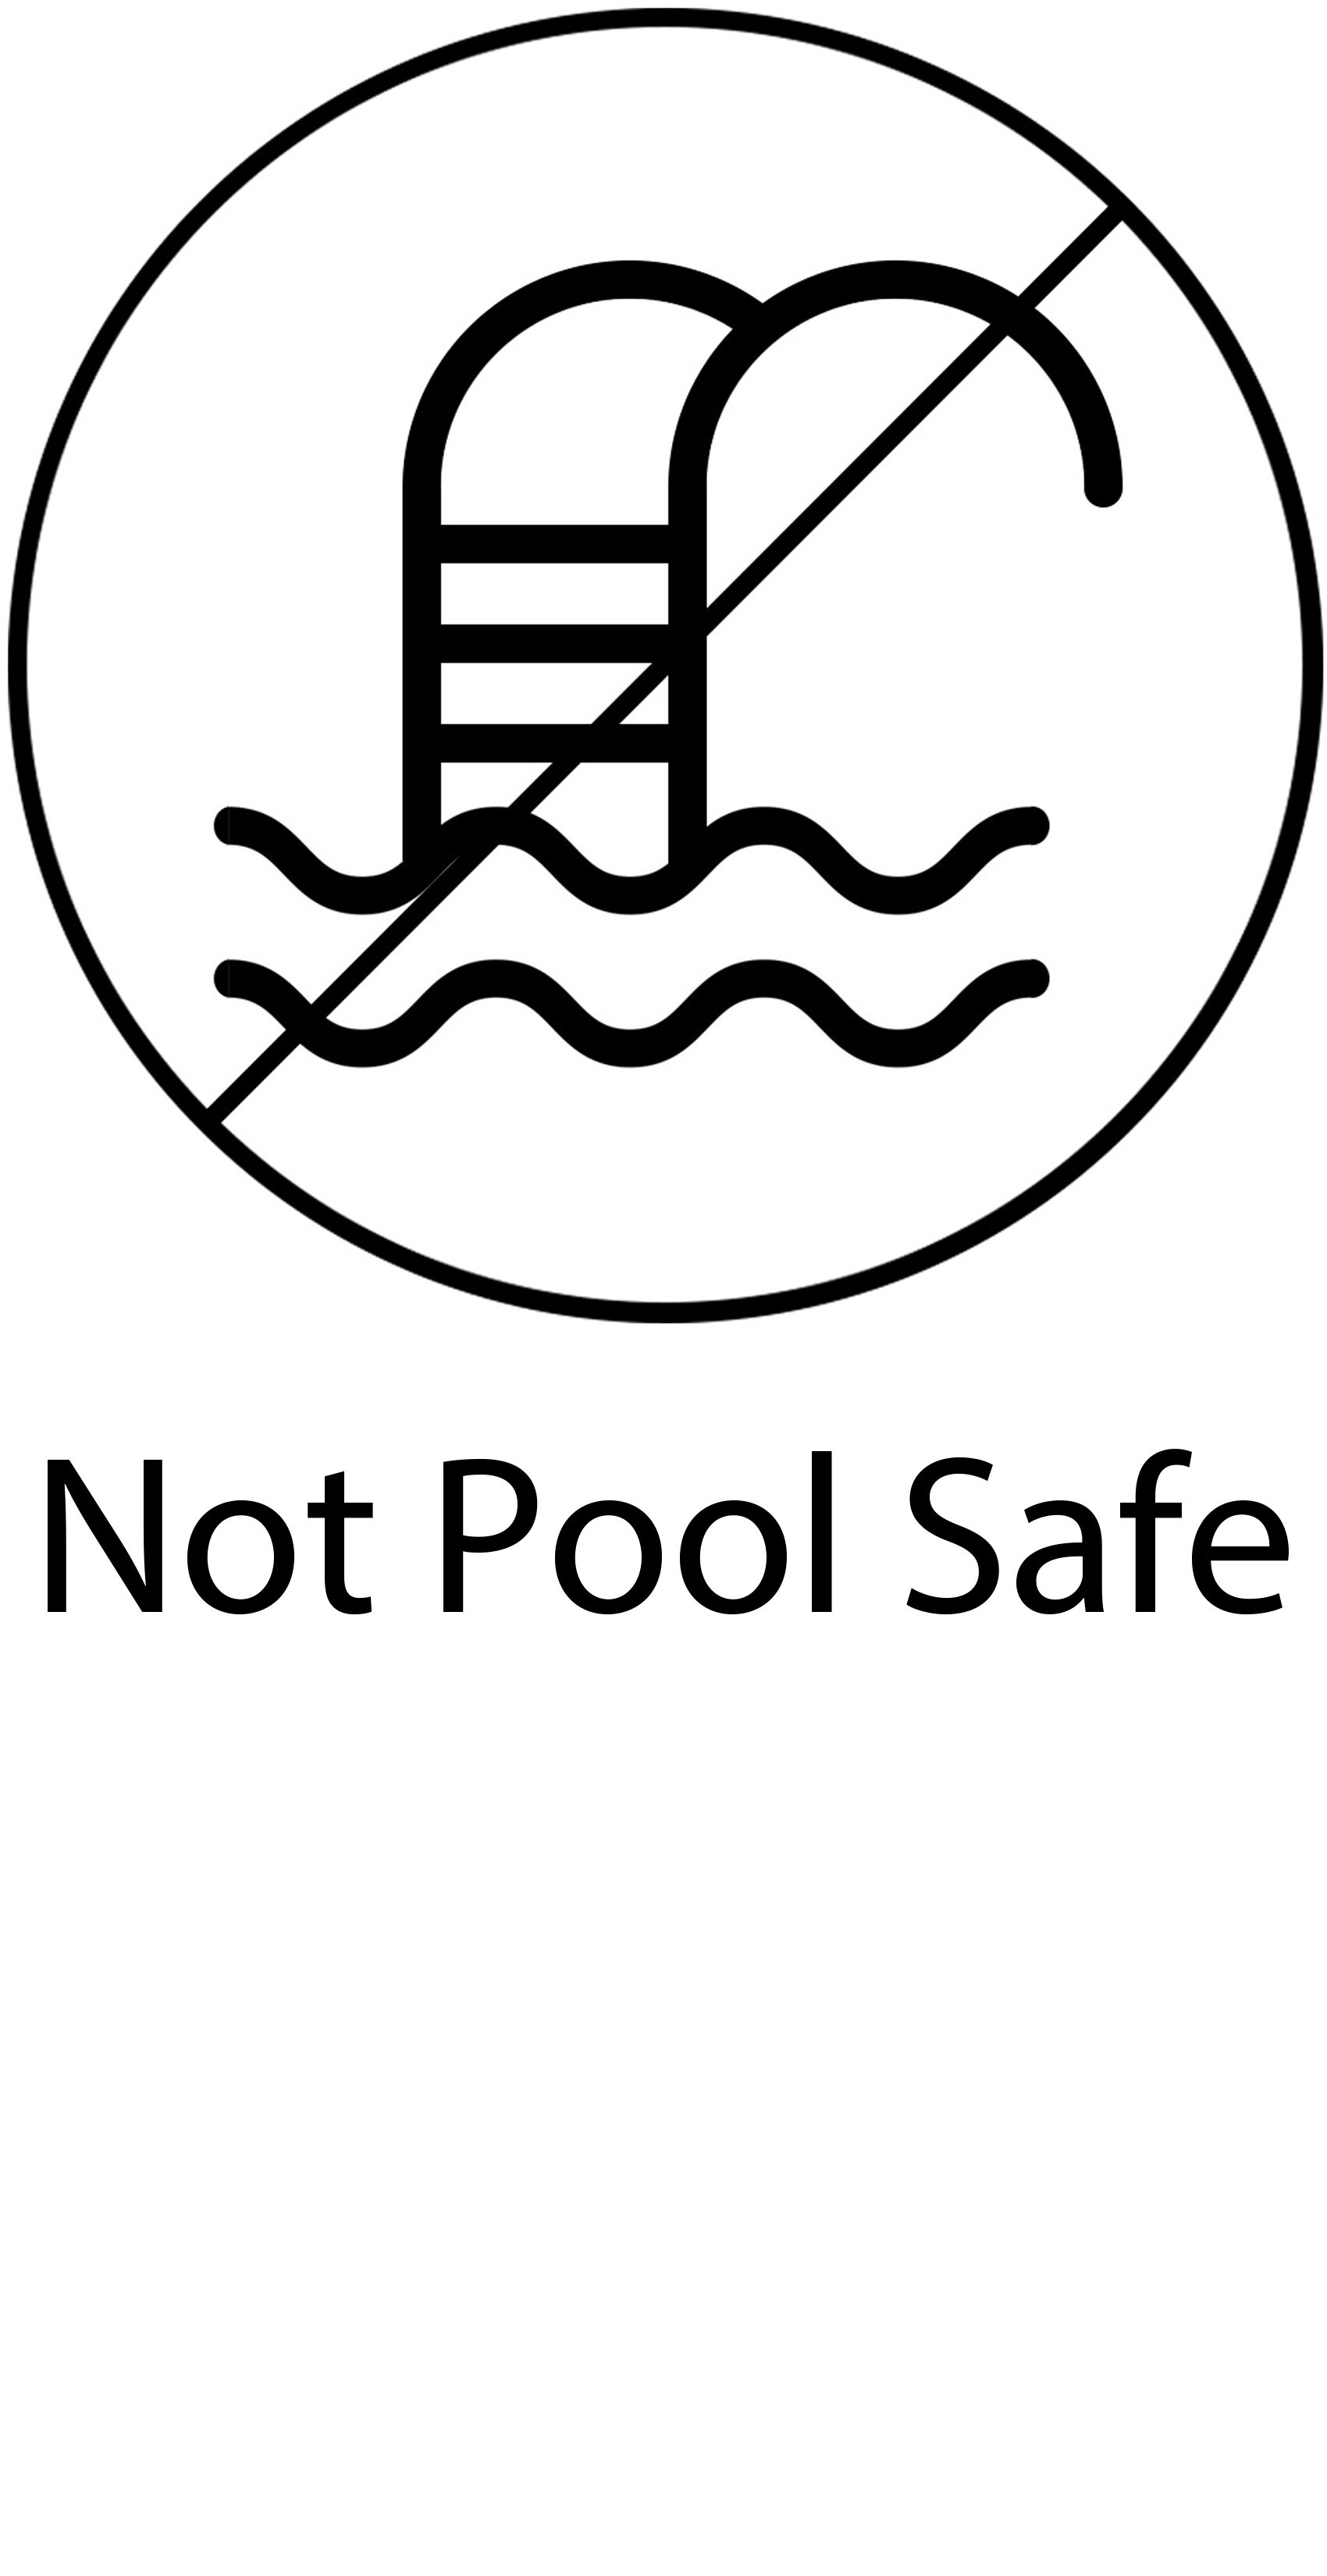 Not pool safe.jpg